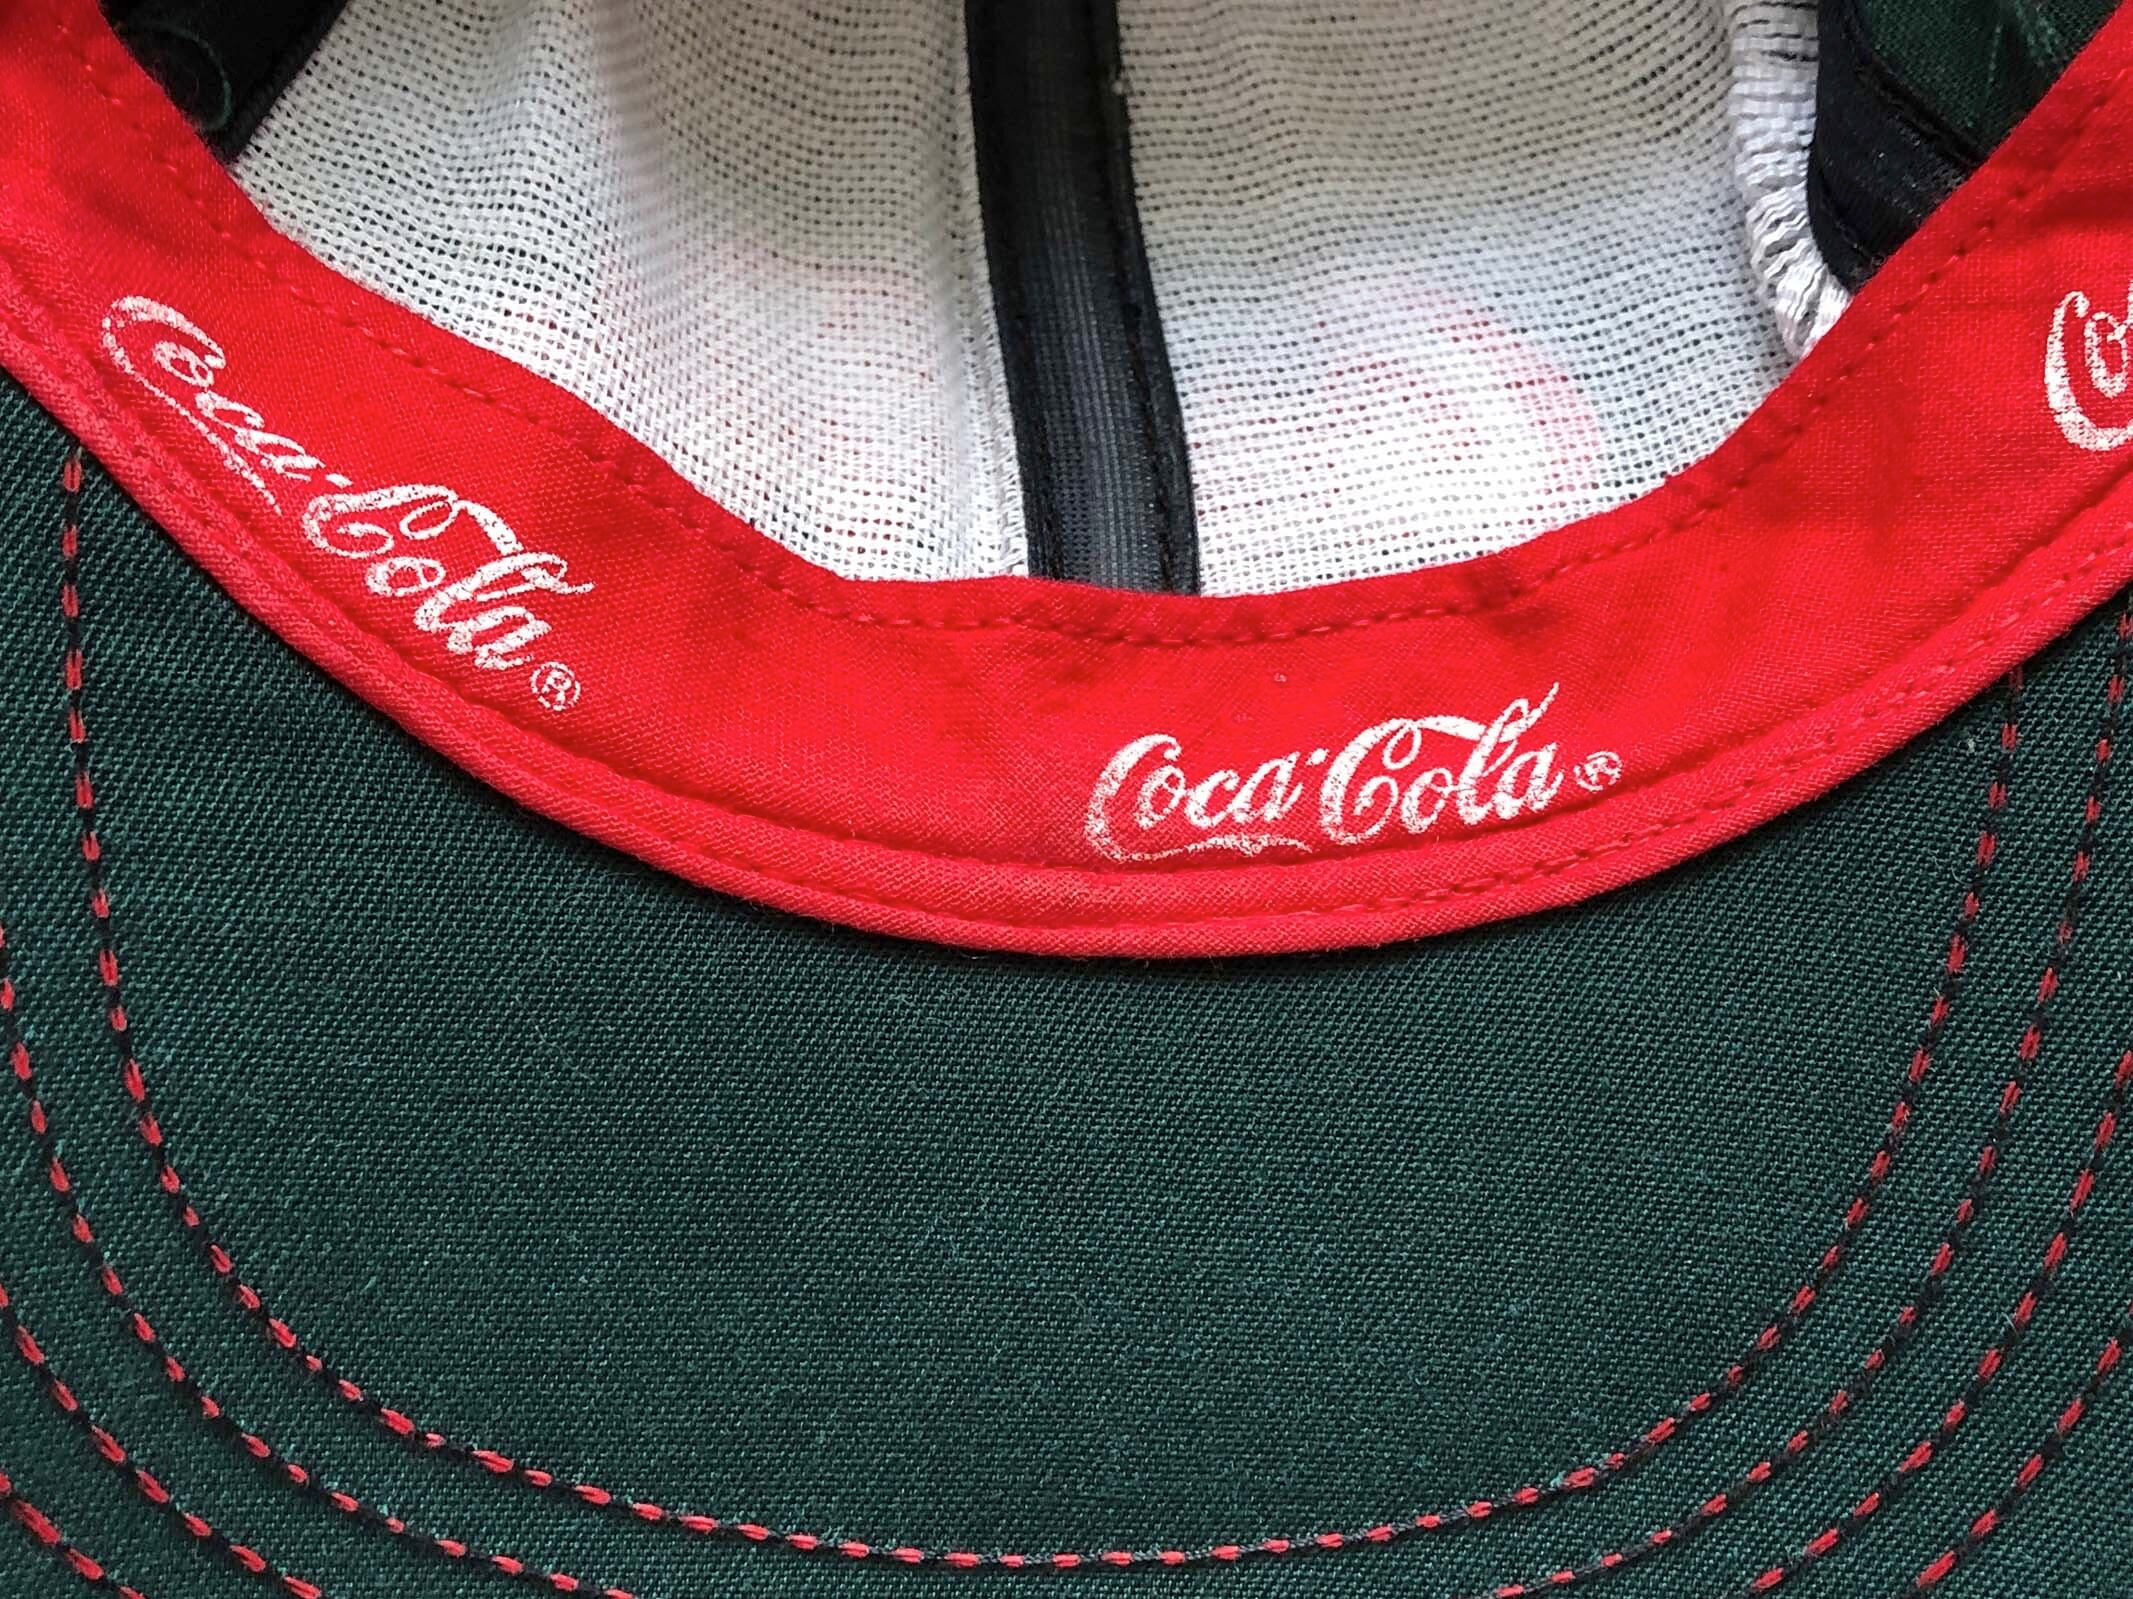 レアカラーバイカラー90年代CocaCola社キャップ